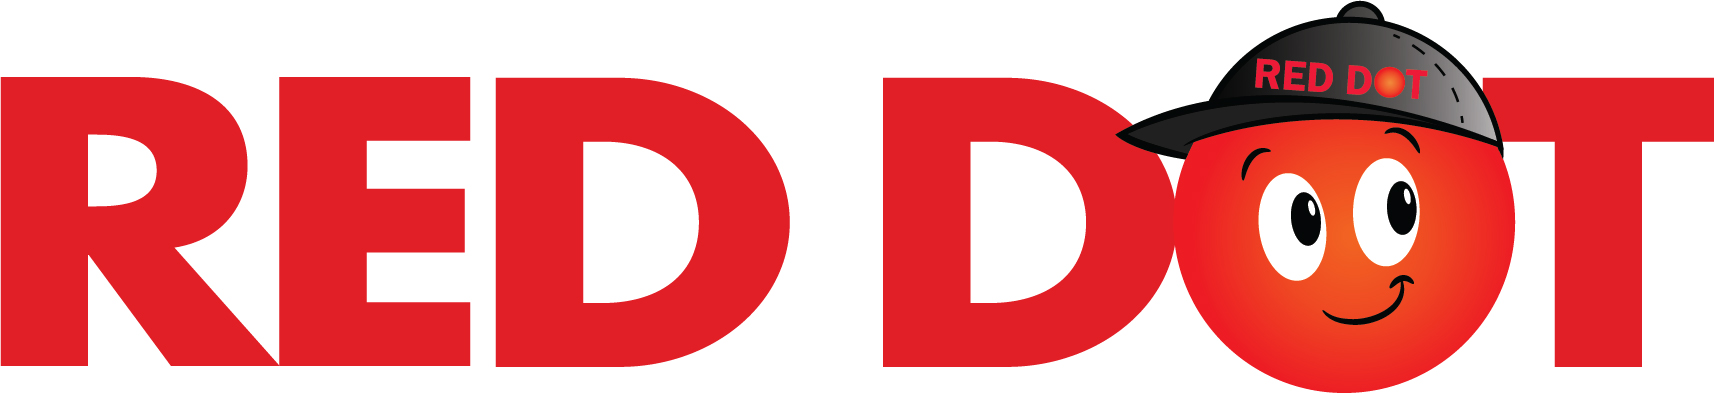 red_dot_logo